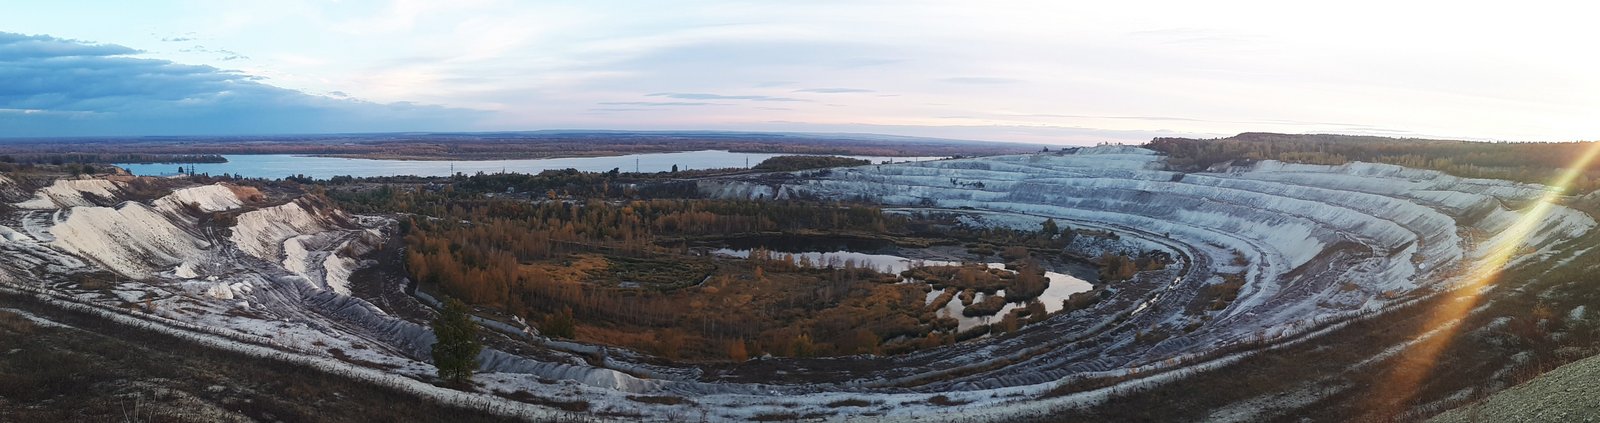 Озеро на закате (панорама).jpg